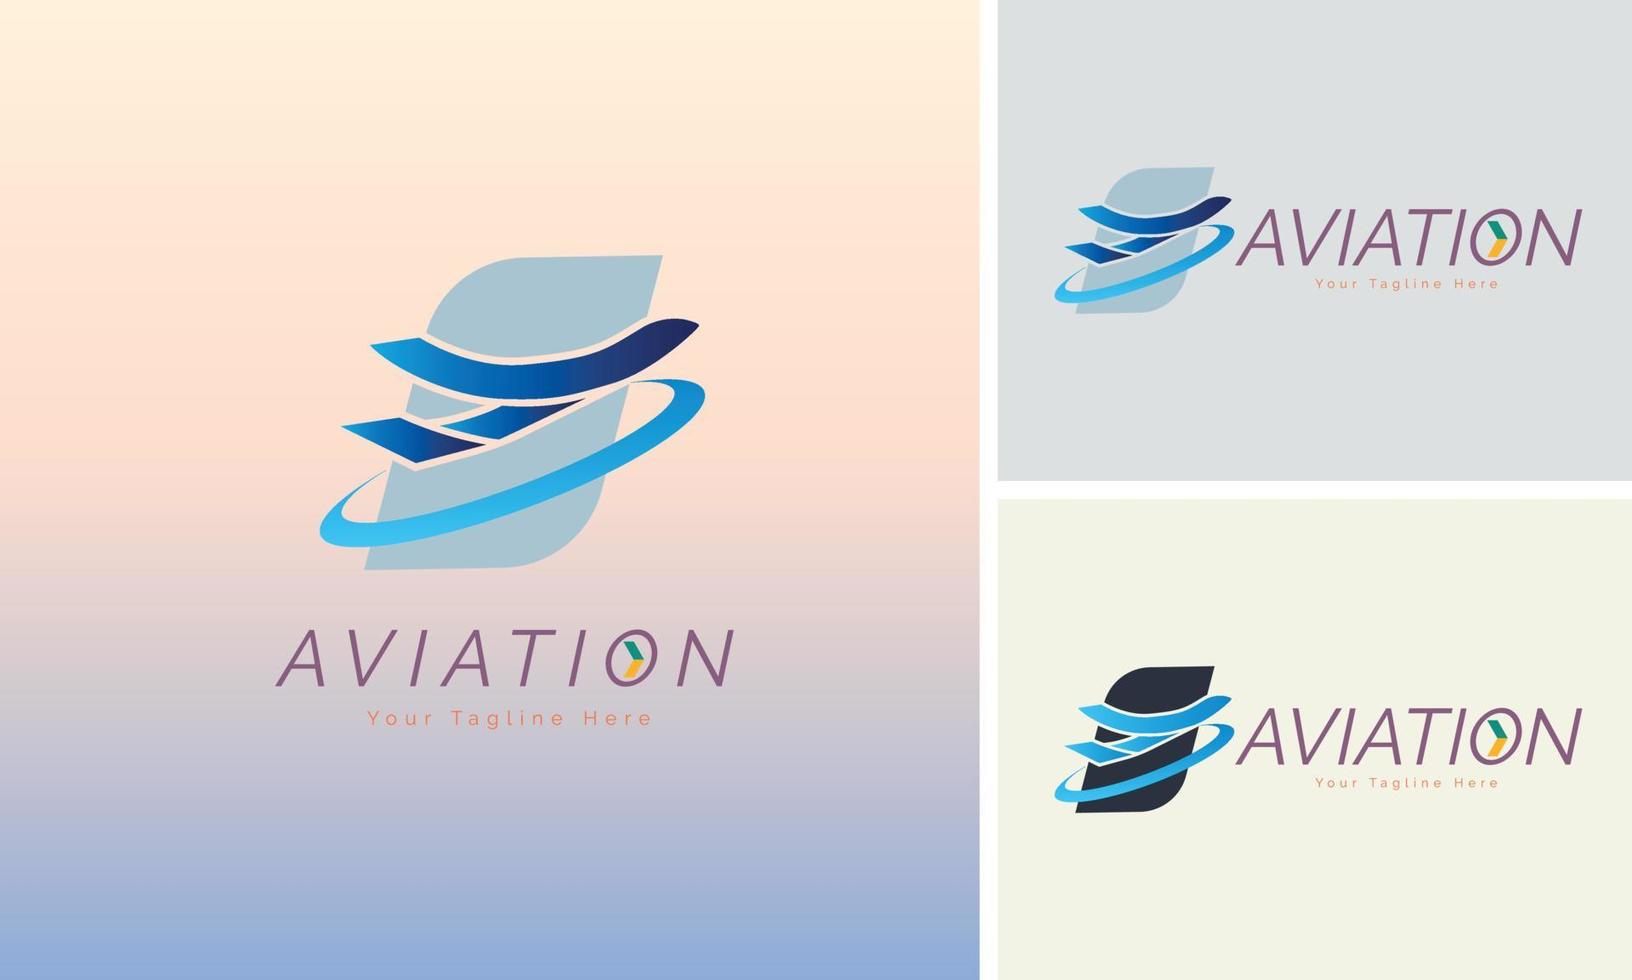 plantilla de diseño de logotipo de despegue de avión de aviación para marca o empresa y otros vector